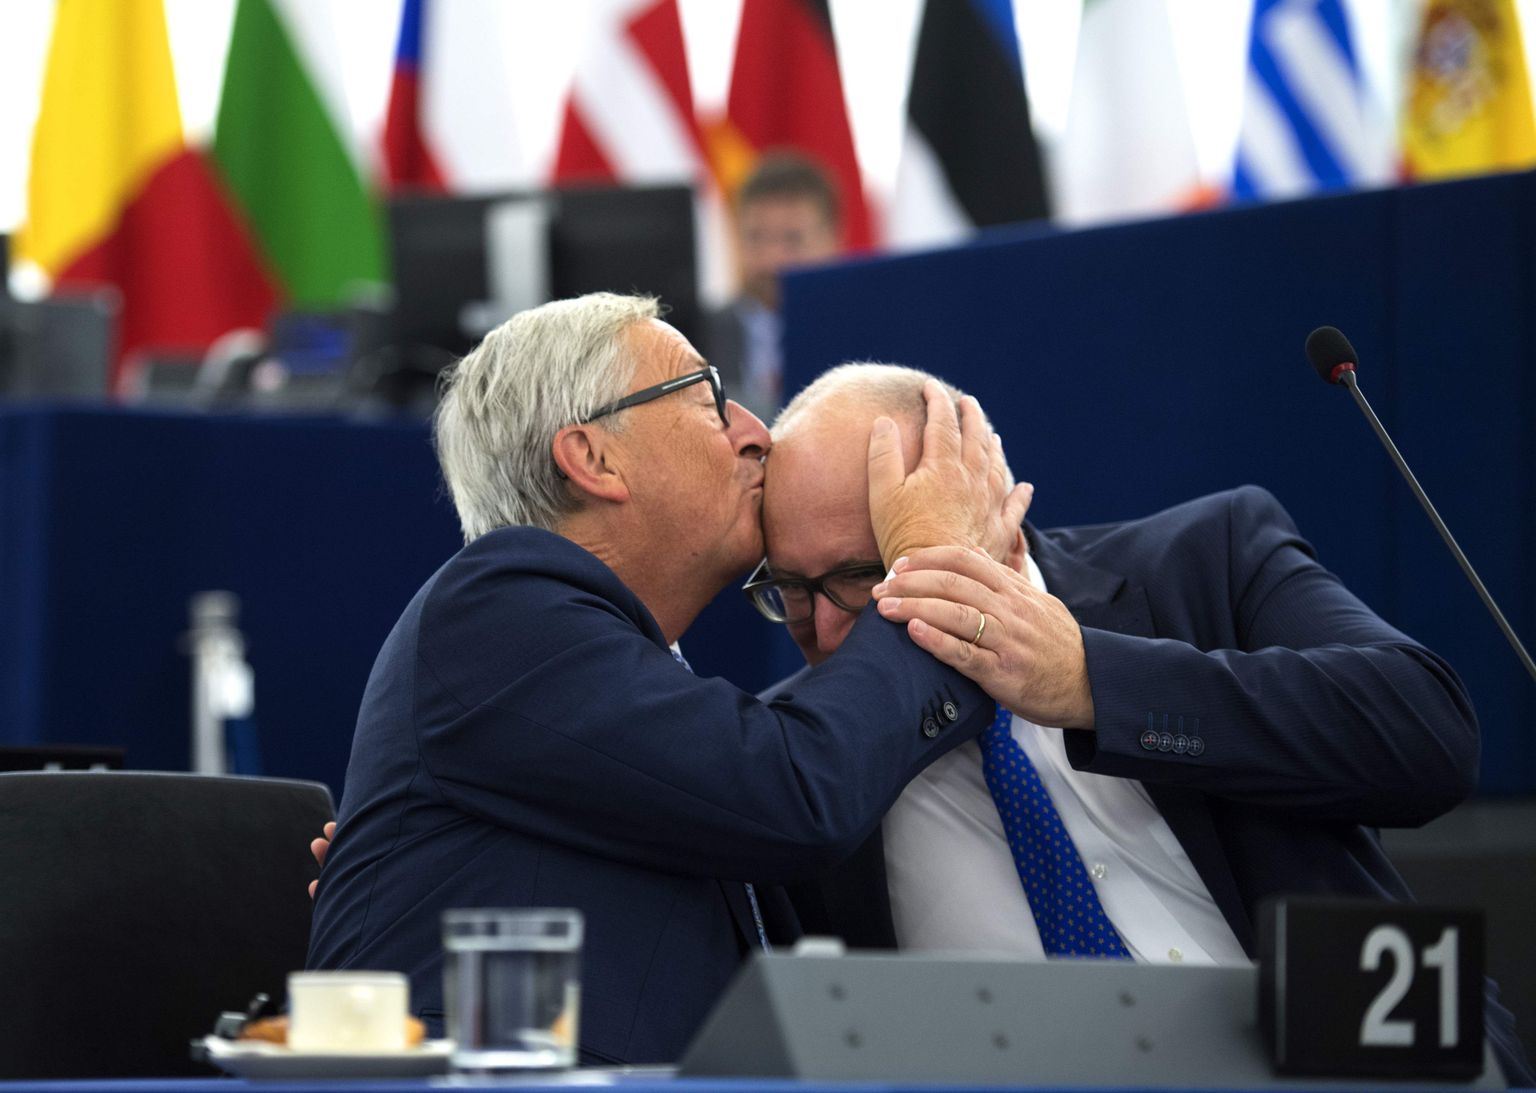 Euroopa Komisjoni president Jean-Claude Juncker jagas ka eile Strasbourgis otsimikumusisid. Seekordseks suudeldavaks oli tema Hollandi sotsist alluv Frans Timmermans.